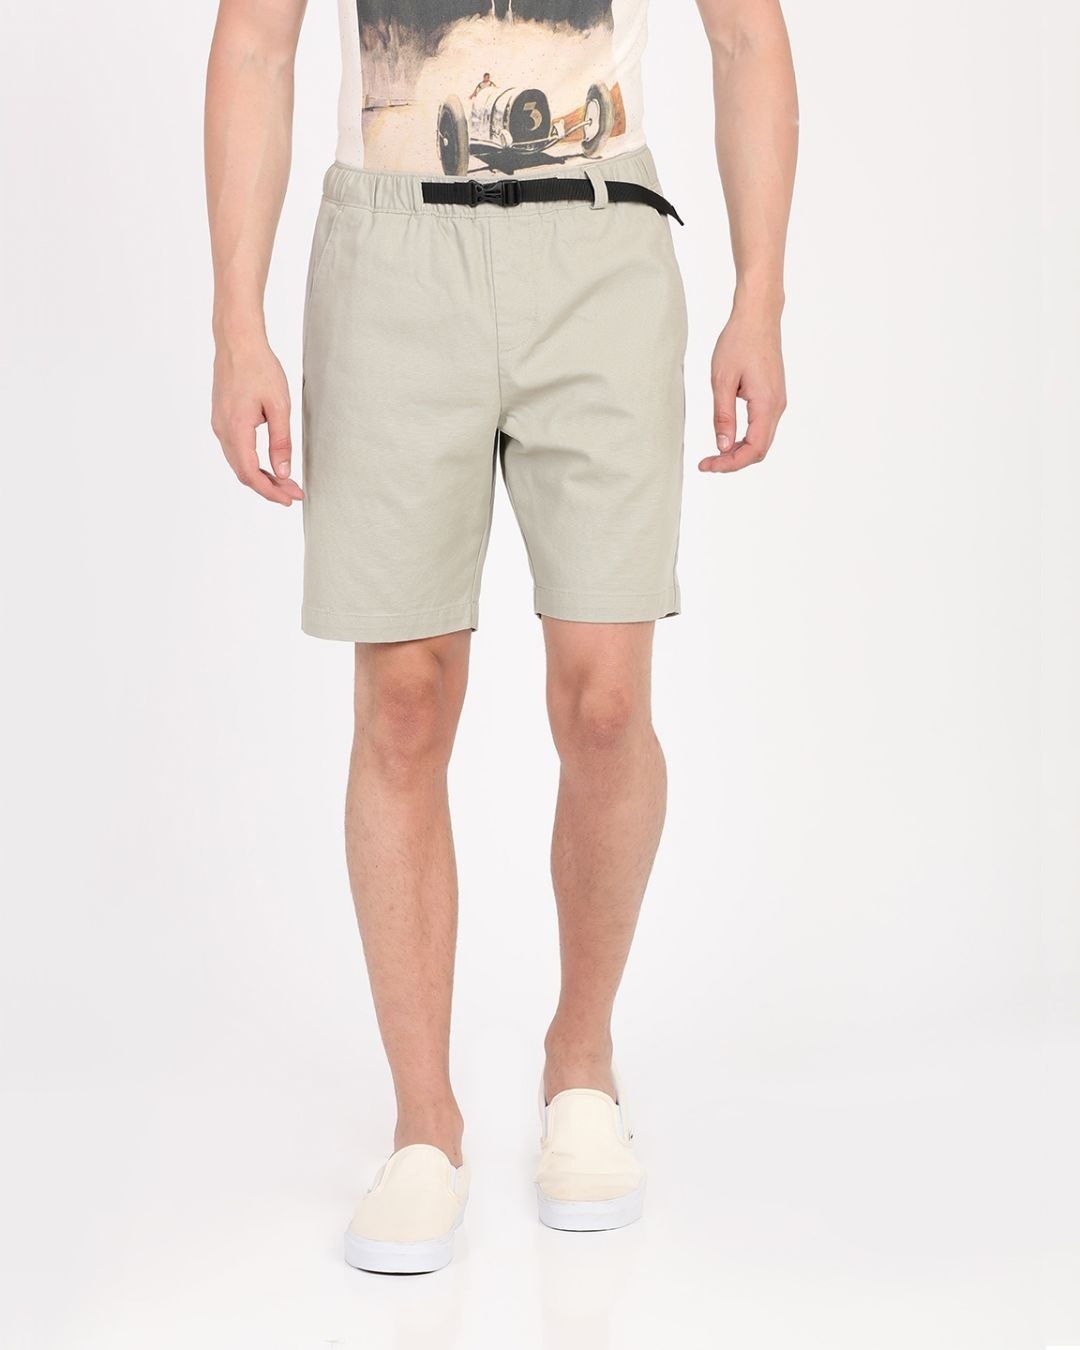 Buy Men's Beige Slim Fit Cotton Shorts for Men Beige Online at Bewakoof